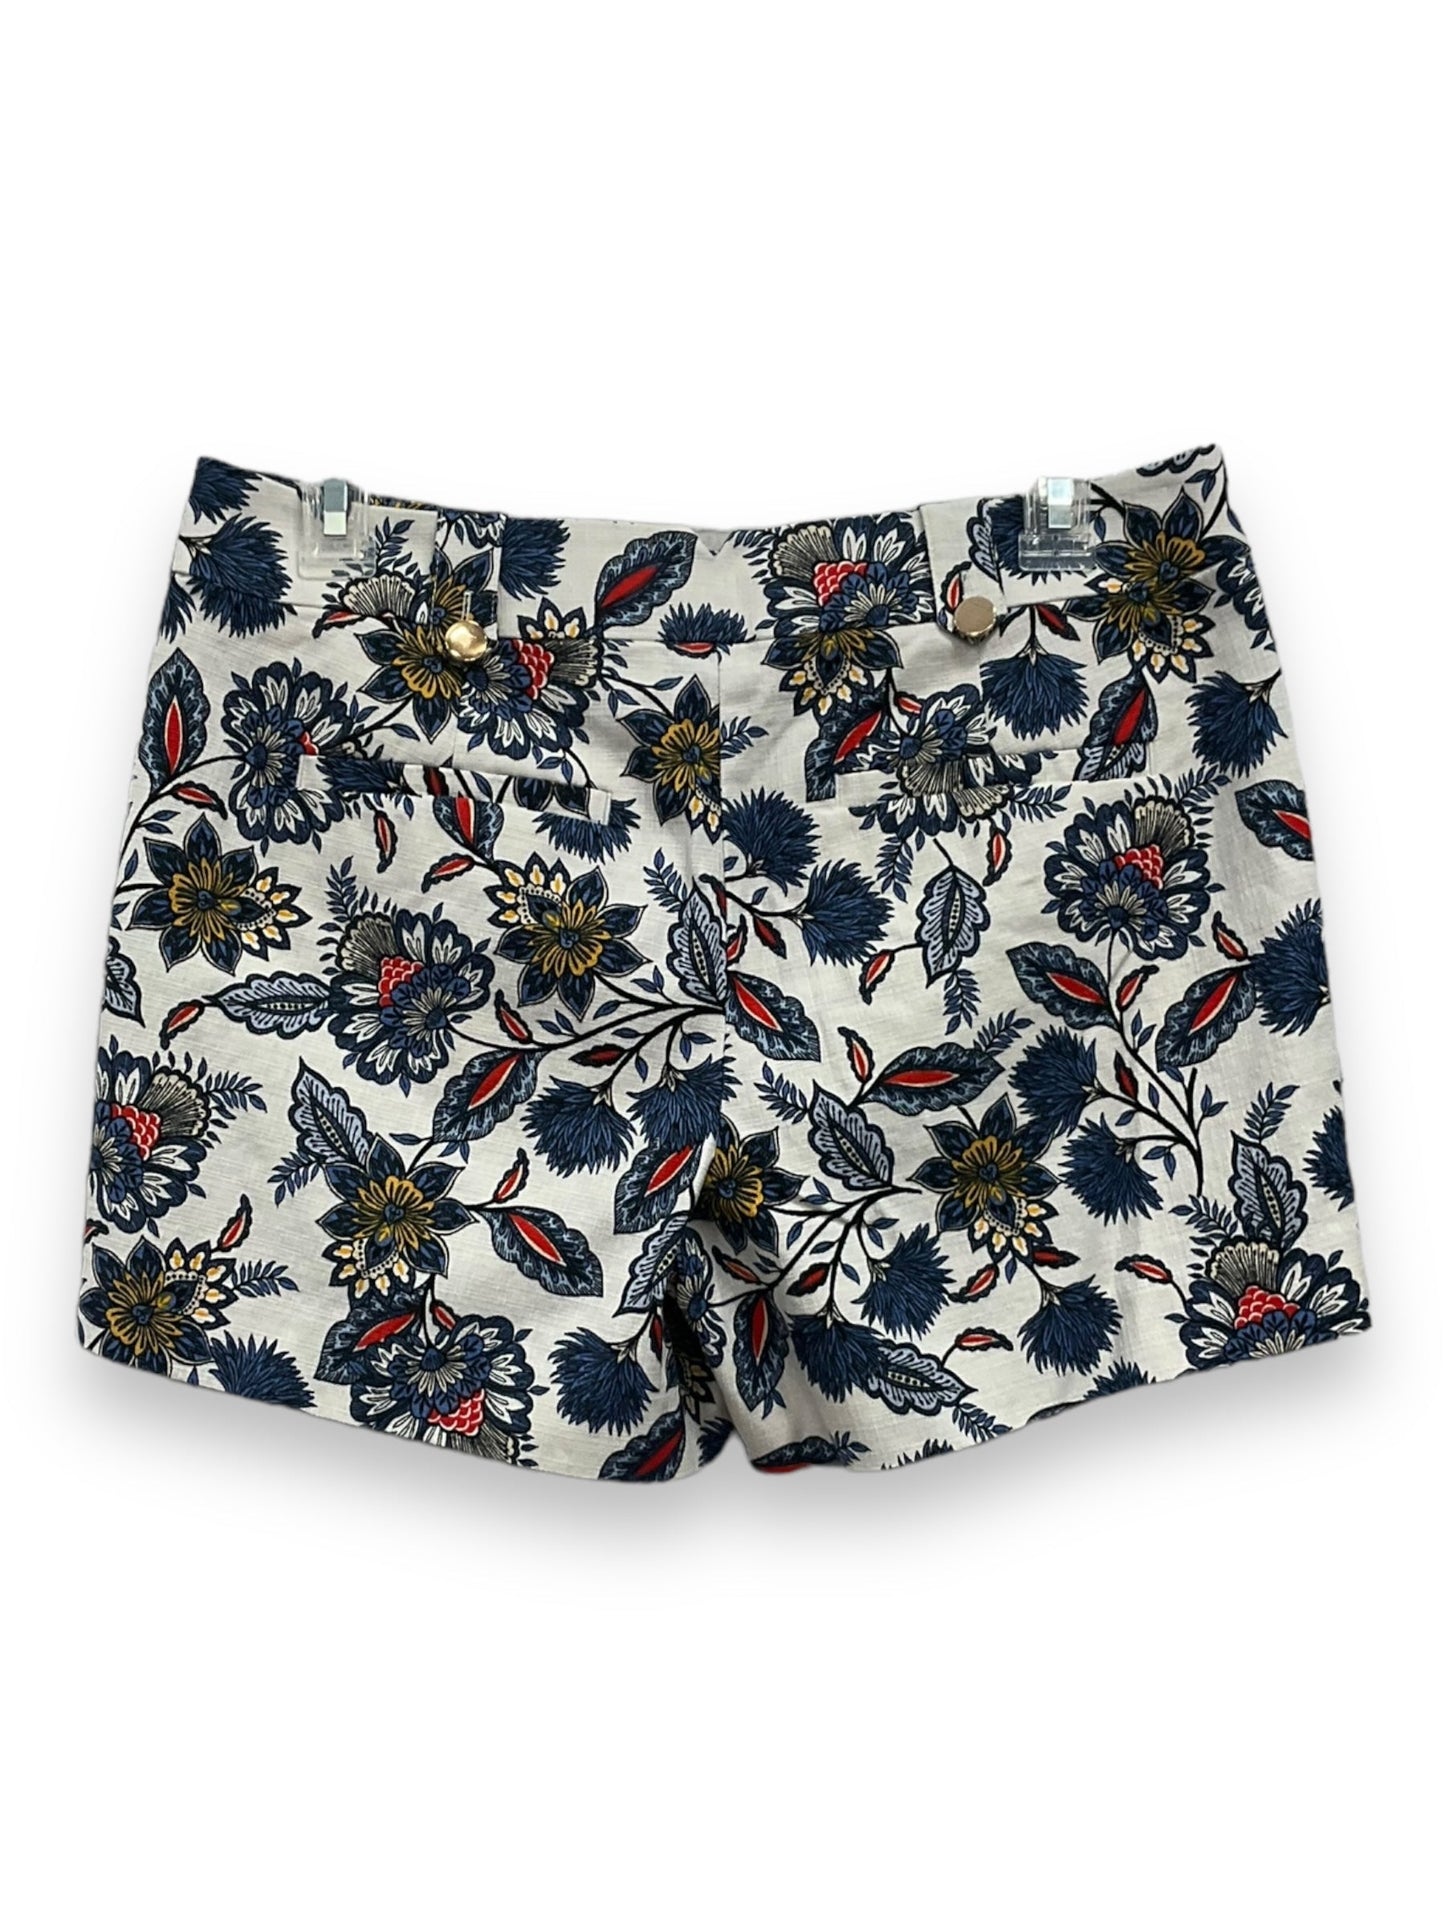 Floral Print Shorts Loft, Size 2